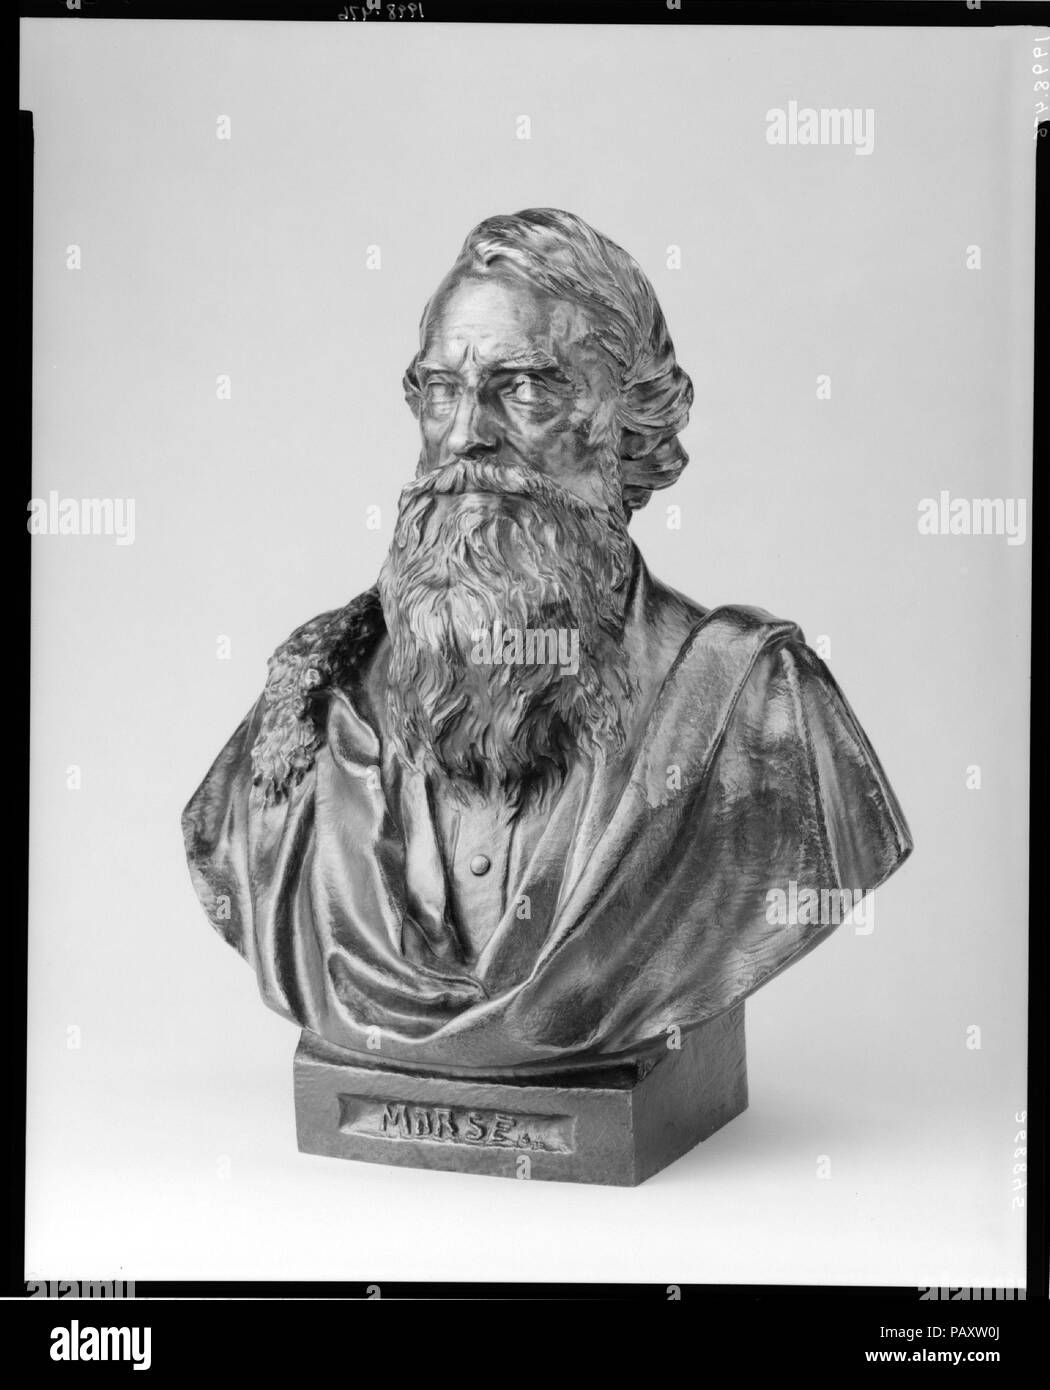 Samuel F. B. Morse. Artista: Byron M. Pickett (ca. 1834-1907). Dimensioni: 15 1/2 x 12 3/4 x 9 3/8 in. (39,4 x 32,4 x 23,8 cm). Data: ca. 1870. Pickett's busto-lunghezza Ritratto di Morse è correlata alla sua over-lifesize statua di bronzo dell'artista-inventore, dedicata nel 1871 a Central Park. Gli anziani barbuto Morse è raffigurato in abito contemporaneo con avvolta sulle spalle. Il suo drappeggio e unincised gli alunni sono in tipico stile neoclassico dispositivi ritratto che persisteva bene nel XIX secolo. Questa miscela di realismo e classicismo esemplifica il ritratto stile favorito da tali altri basato a New York Foto Stock